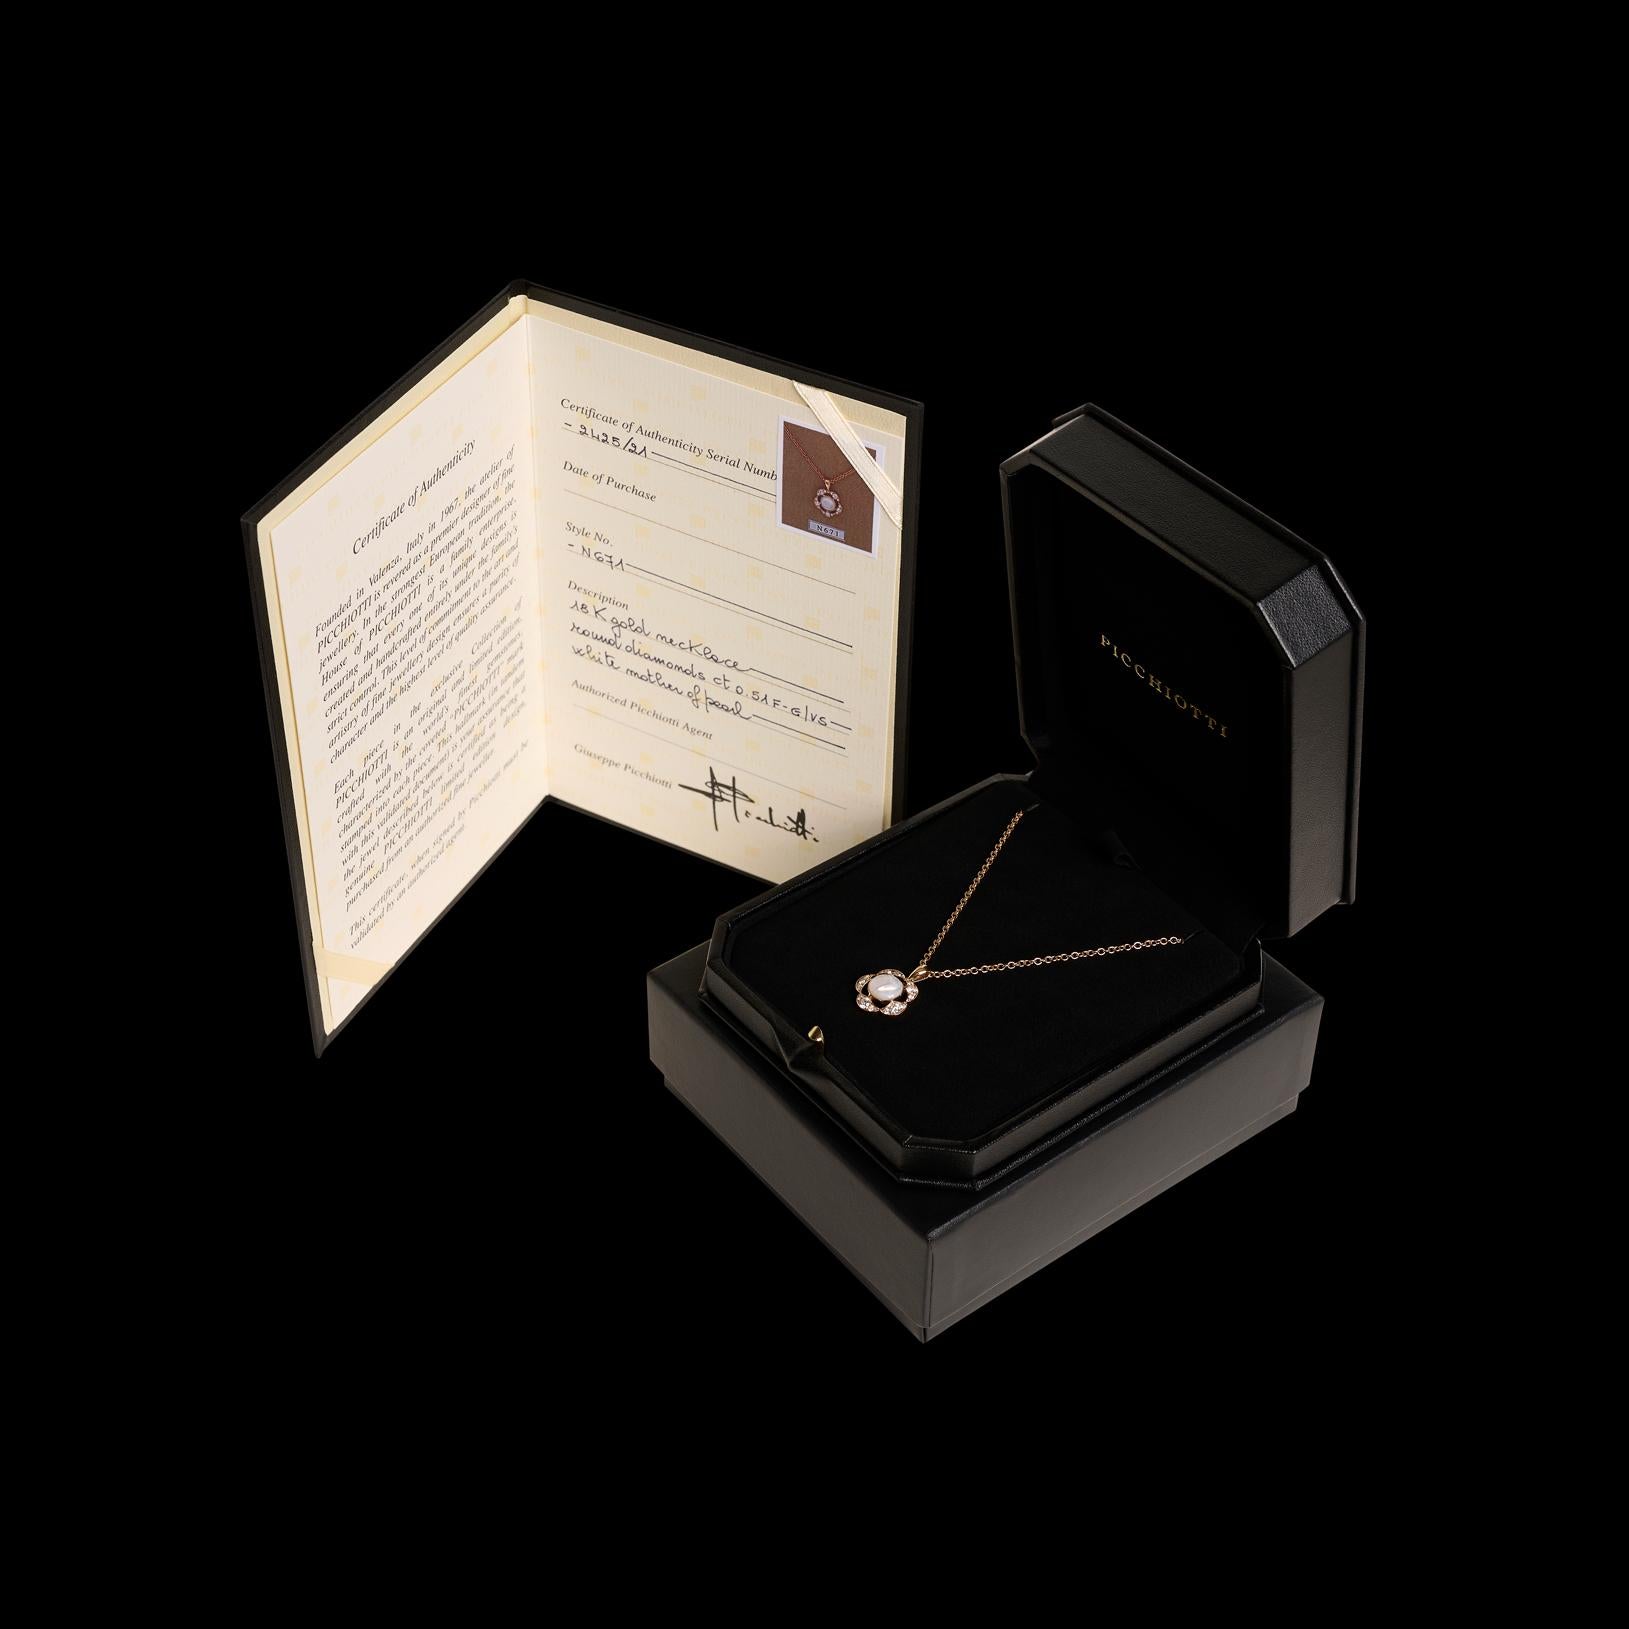 Aus dem exklusiven italienischen Designhaus Picchiotti stammt diese wunderschöne Halskette aus 18 Karat Roségold mit einem einzigartigen Anhänger aus Perlmutt und Diamanten. 15 funkelnde weiße Diamanten kommen zusammen auf ein Gesamtgewicht von 0,51